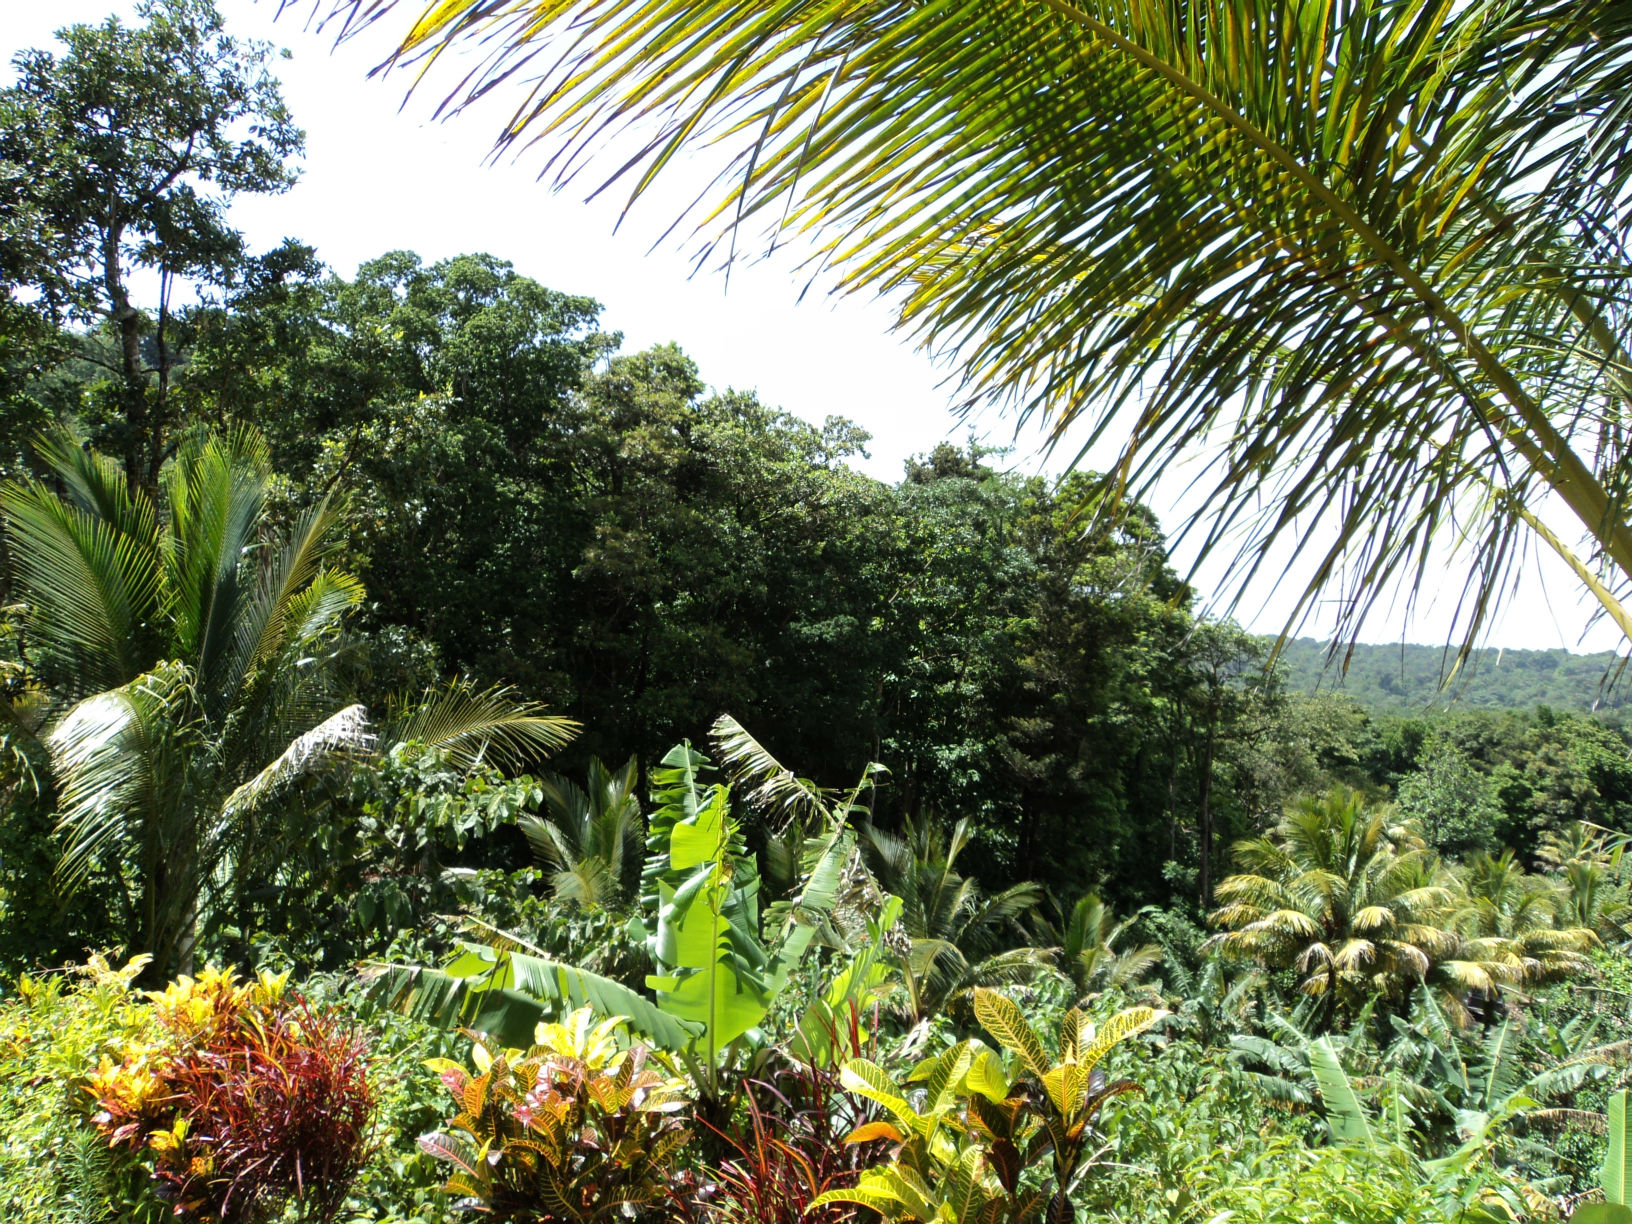 Dominica Real Estate: Land For Sale In Despor